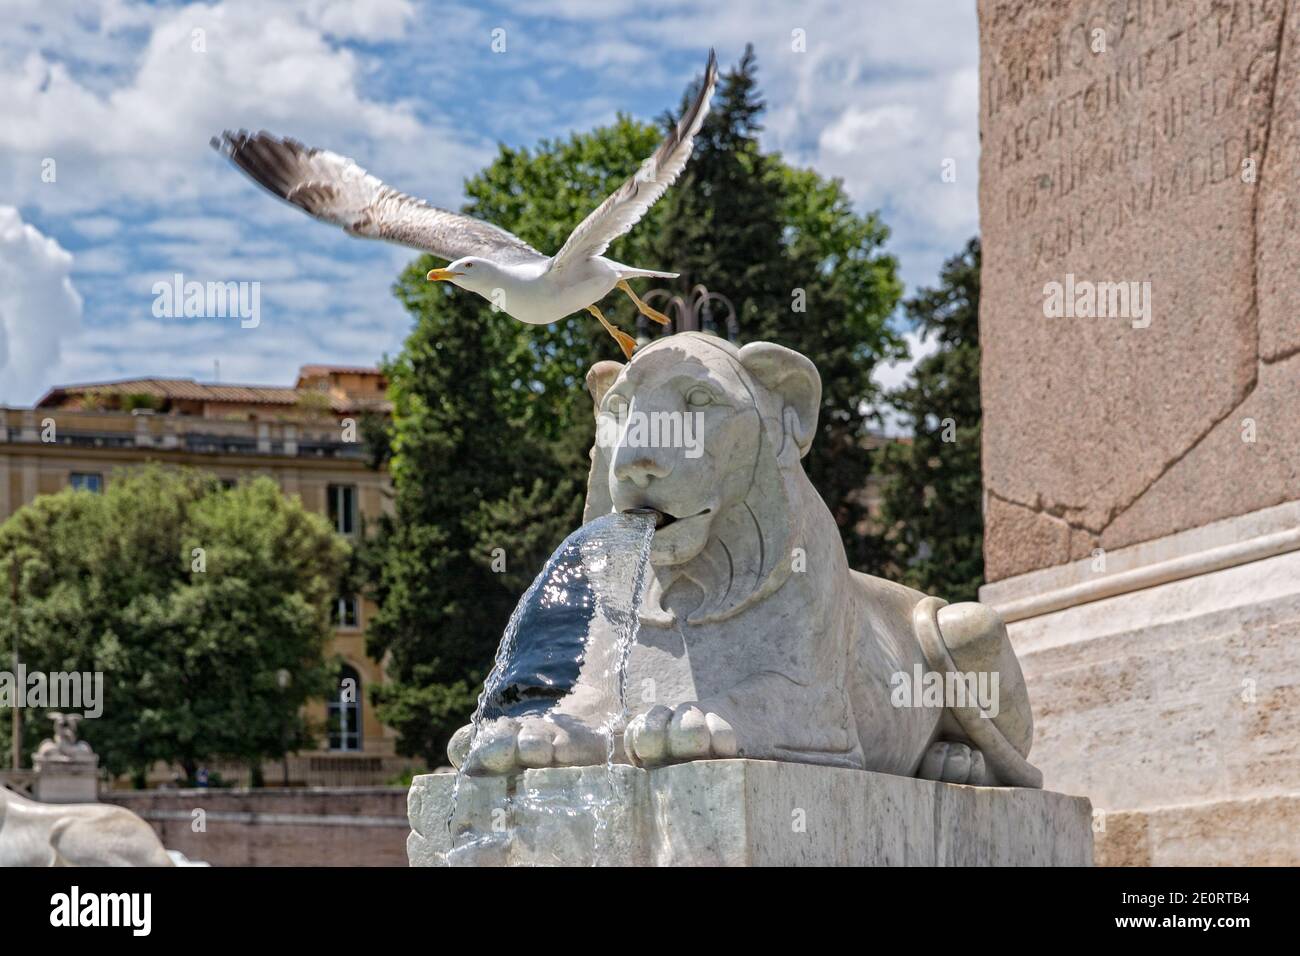 Mouette à la statue du lion sur la Piazza del Popolo. Des lions et des fontaines de marbre entourent un vieil obélisque dans le centre de Piazza Popolo, Rome, Italie Banque D'Images